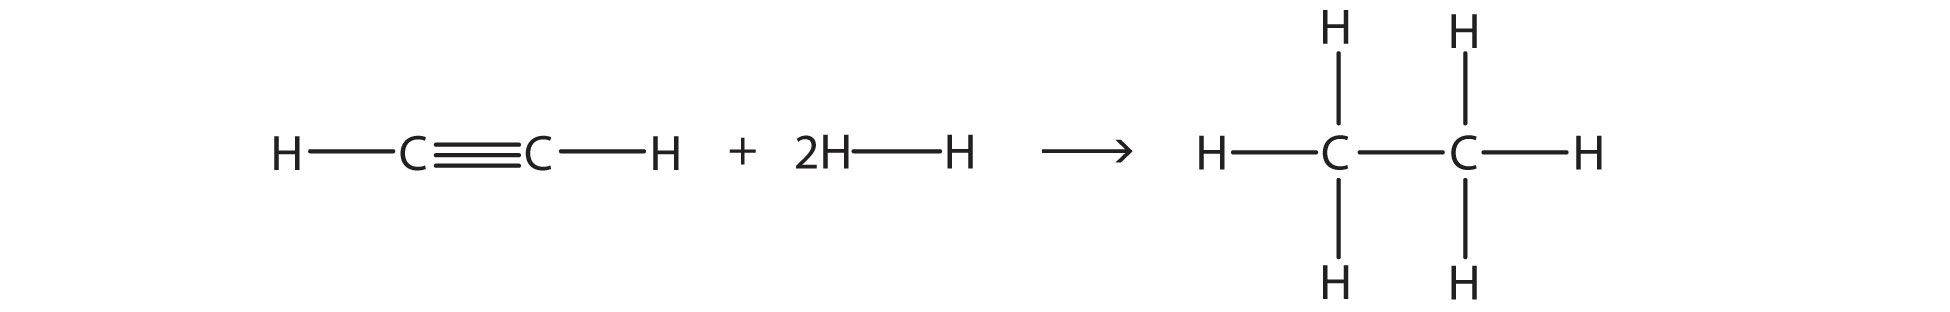 El etino reacciona con dos moléculas de gas hidrógeno para formar etano.